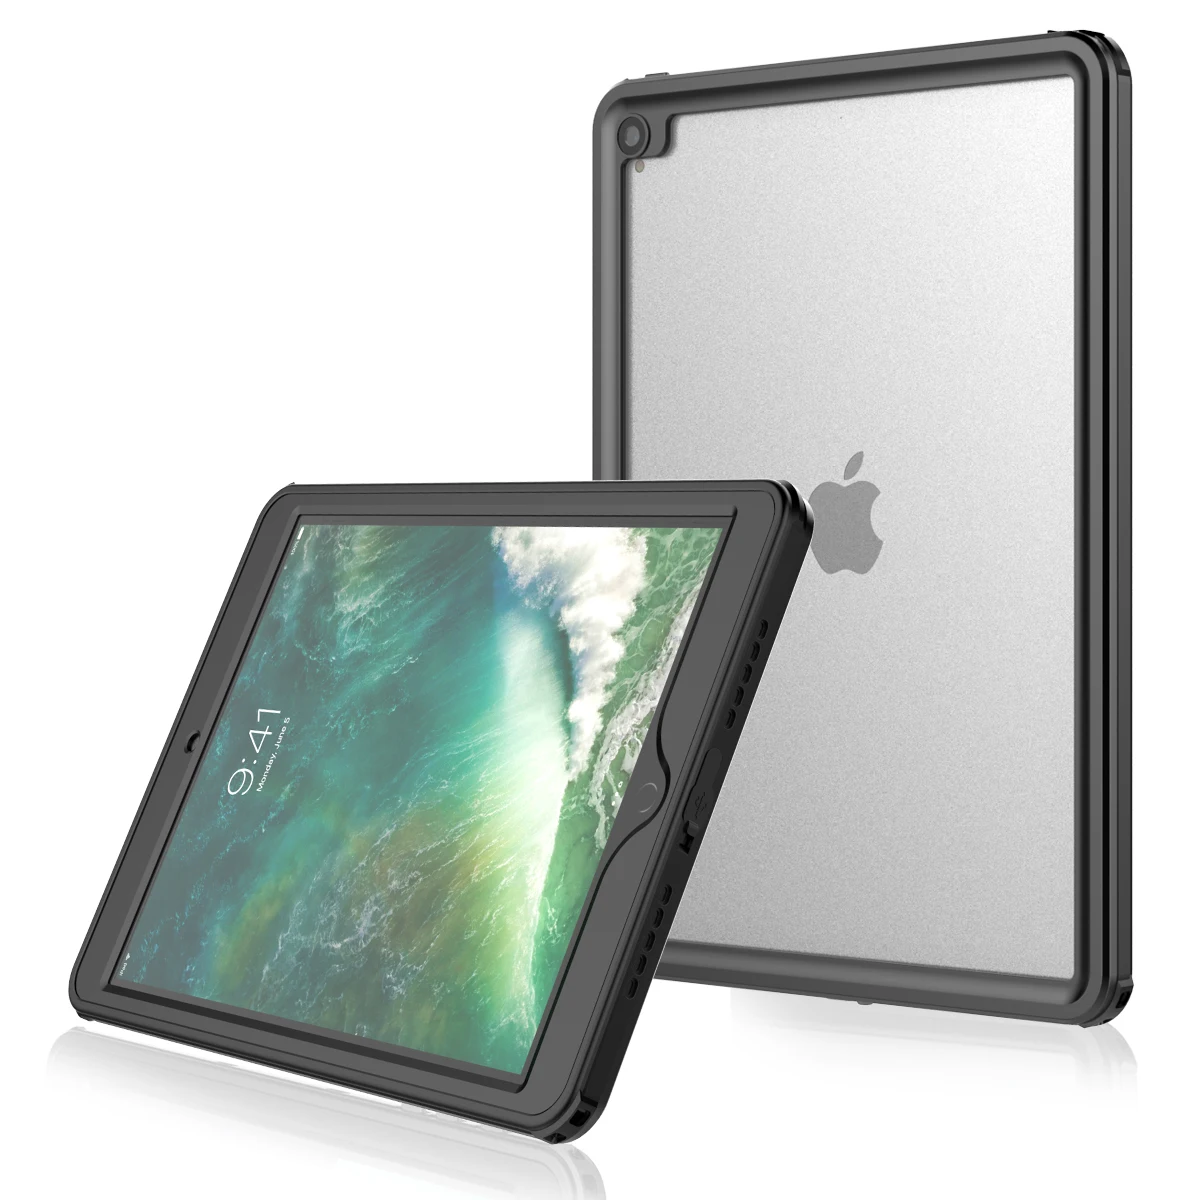 Фото IP68 ударопрочный корпус для iPad Air (2019) 10 5 дюймов Водонепроницаемый устойчивость к